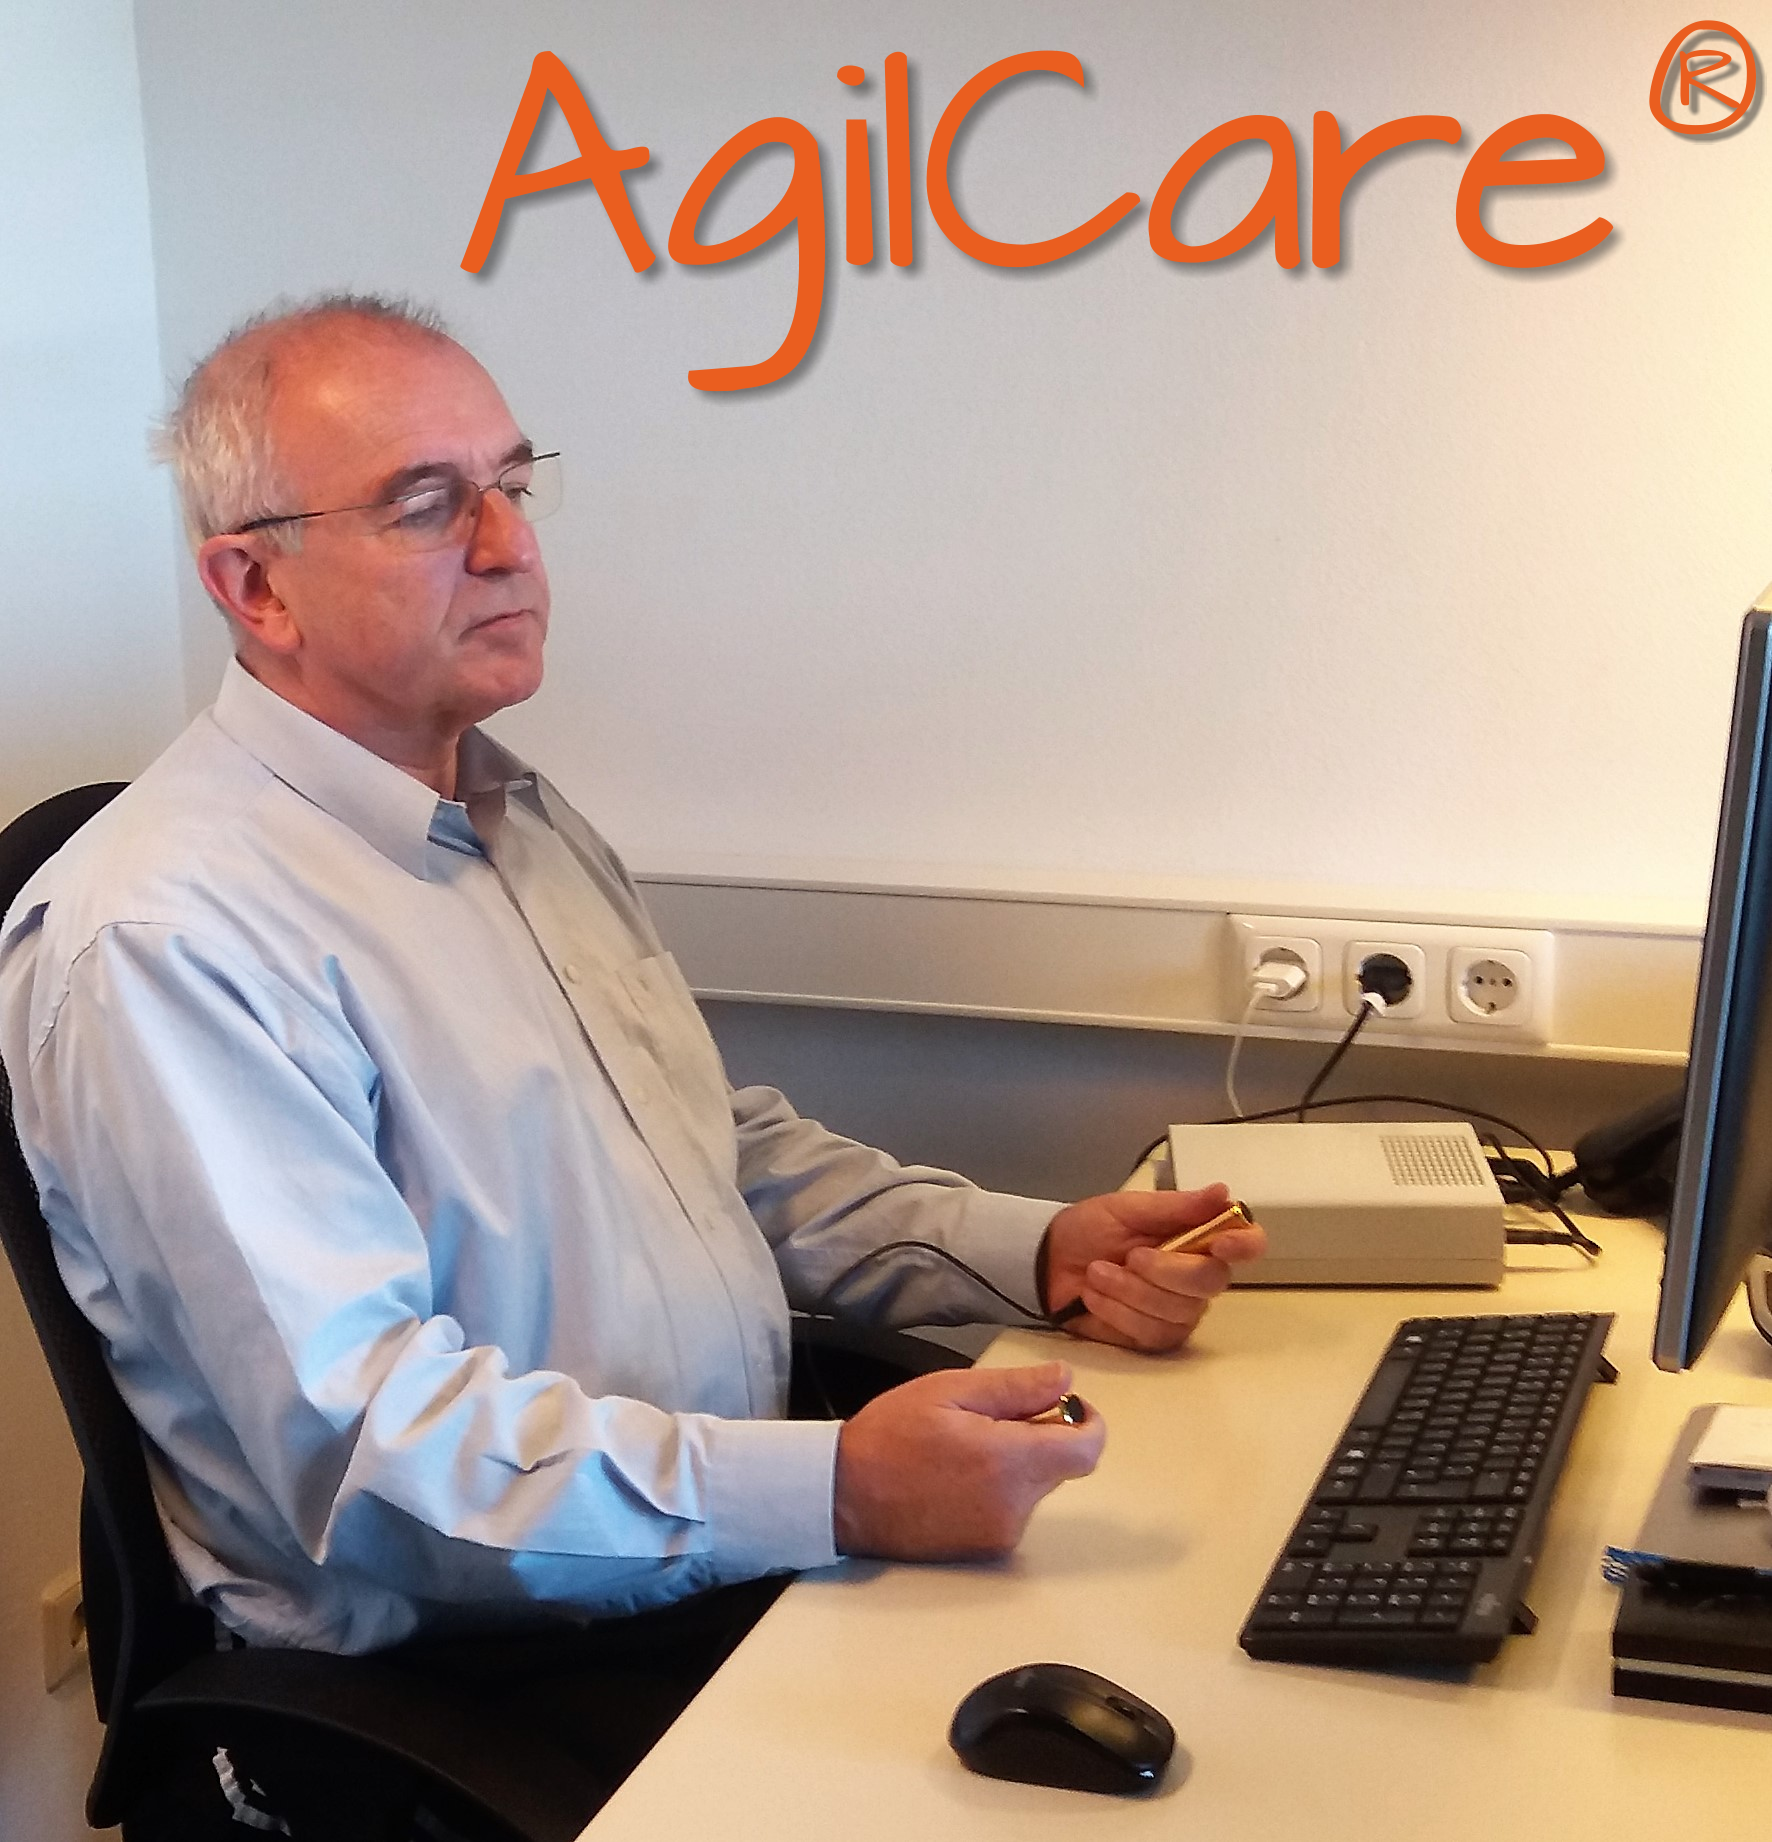 AgilCare als Chance für Leben ohne Krankheit